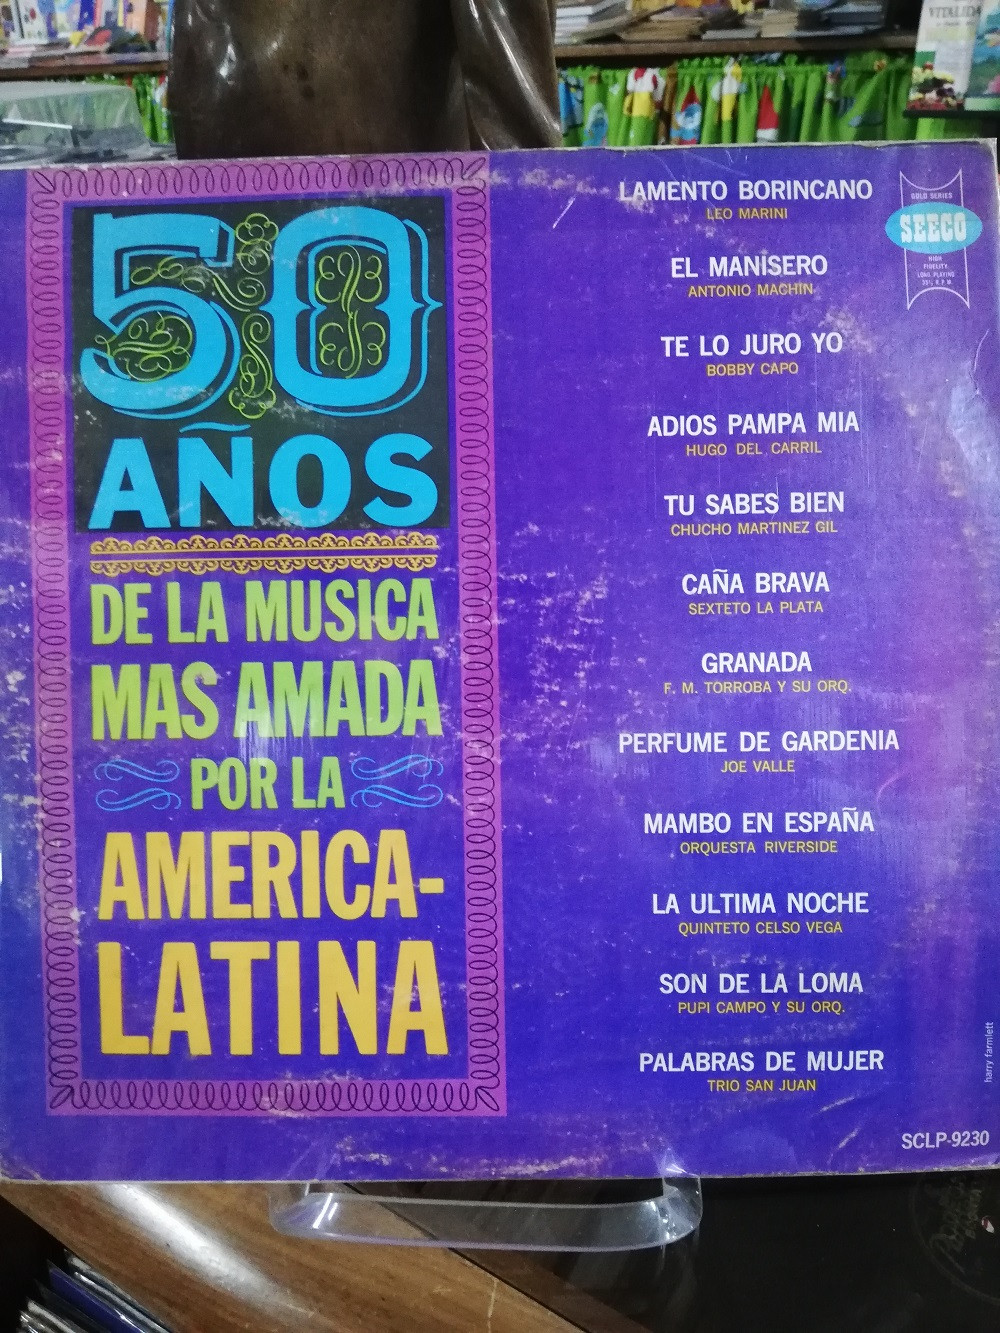 Imagen LP 50 AÑOS DE LA MÚSICA MAS AMADA POR LA AMÉRICA LATINA - ARTISTAS VARIOS 1